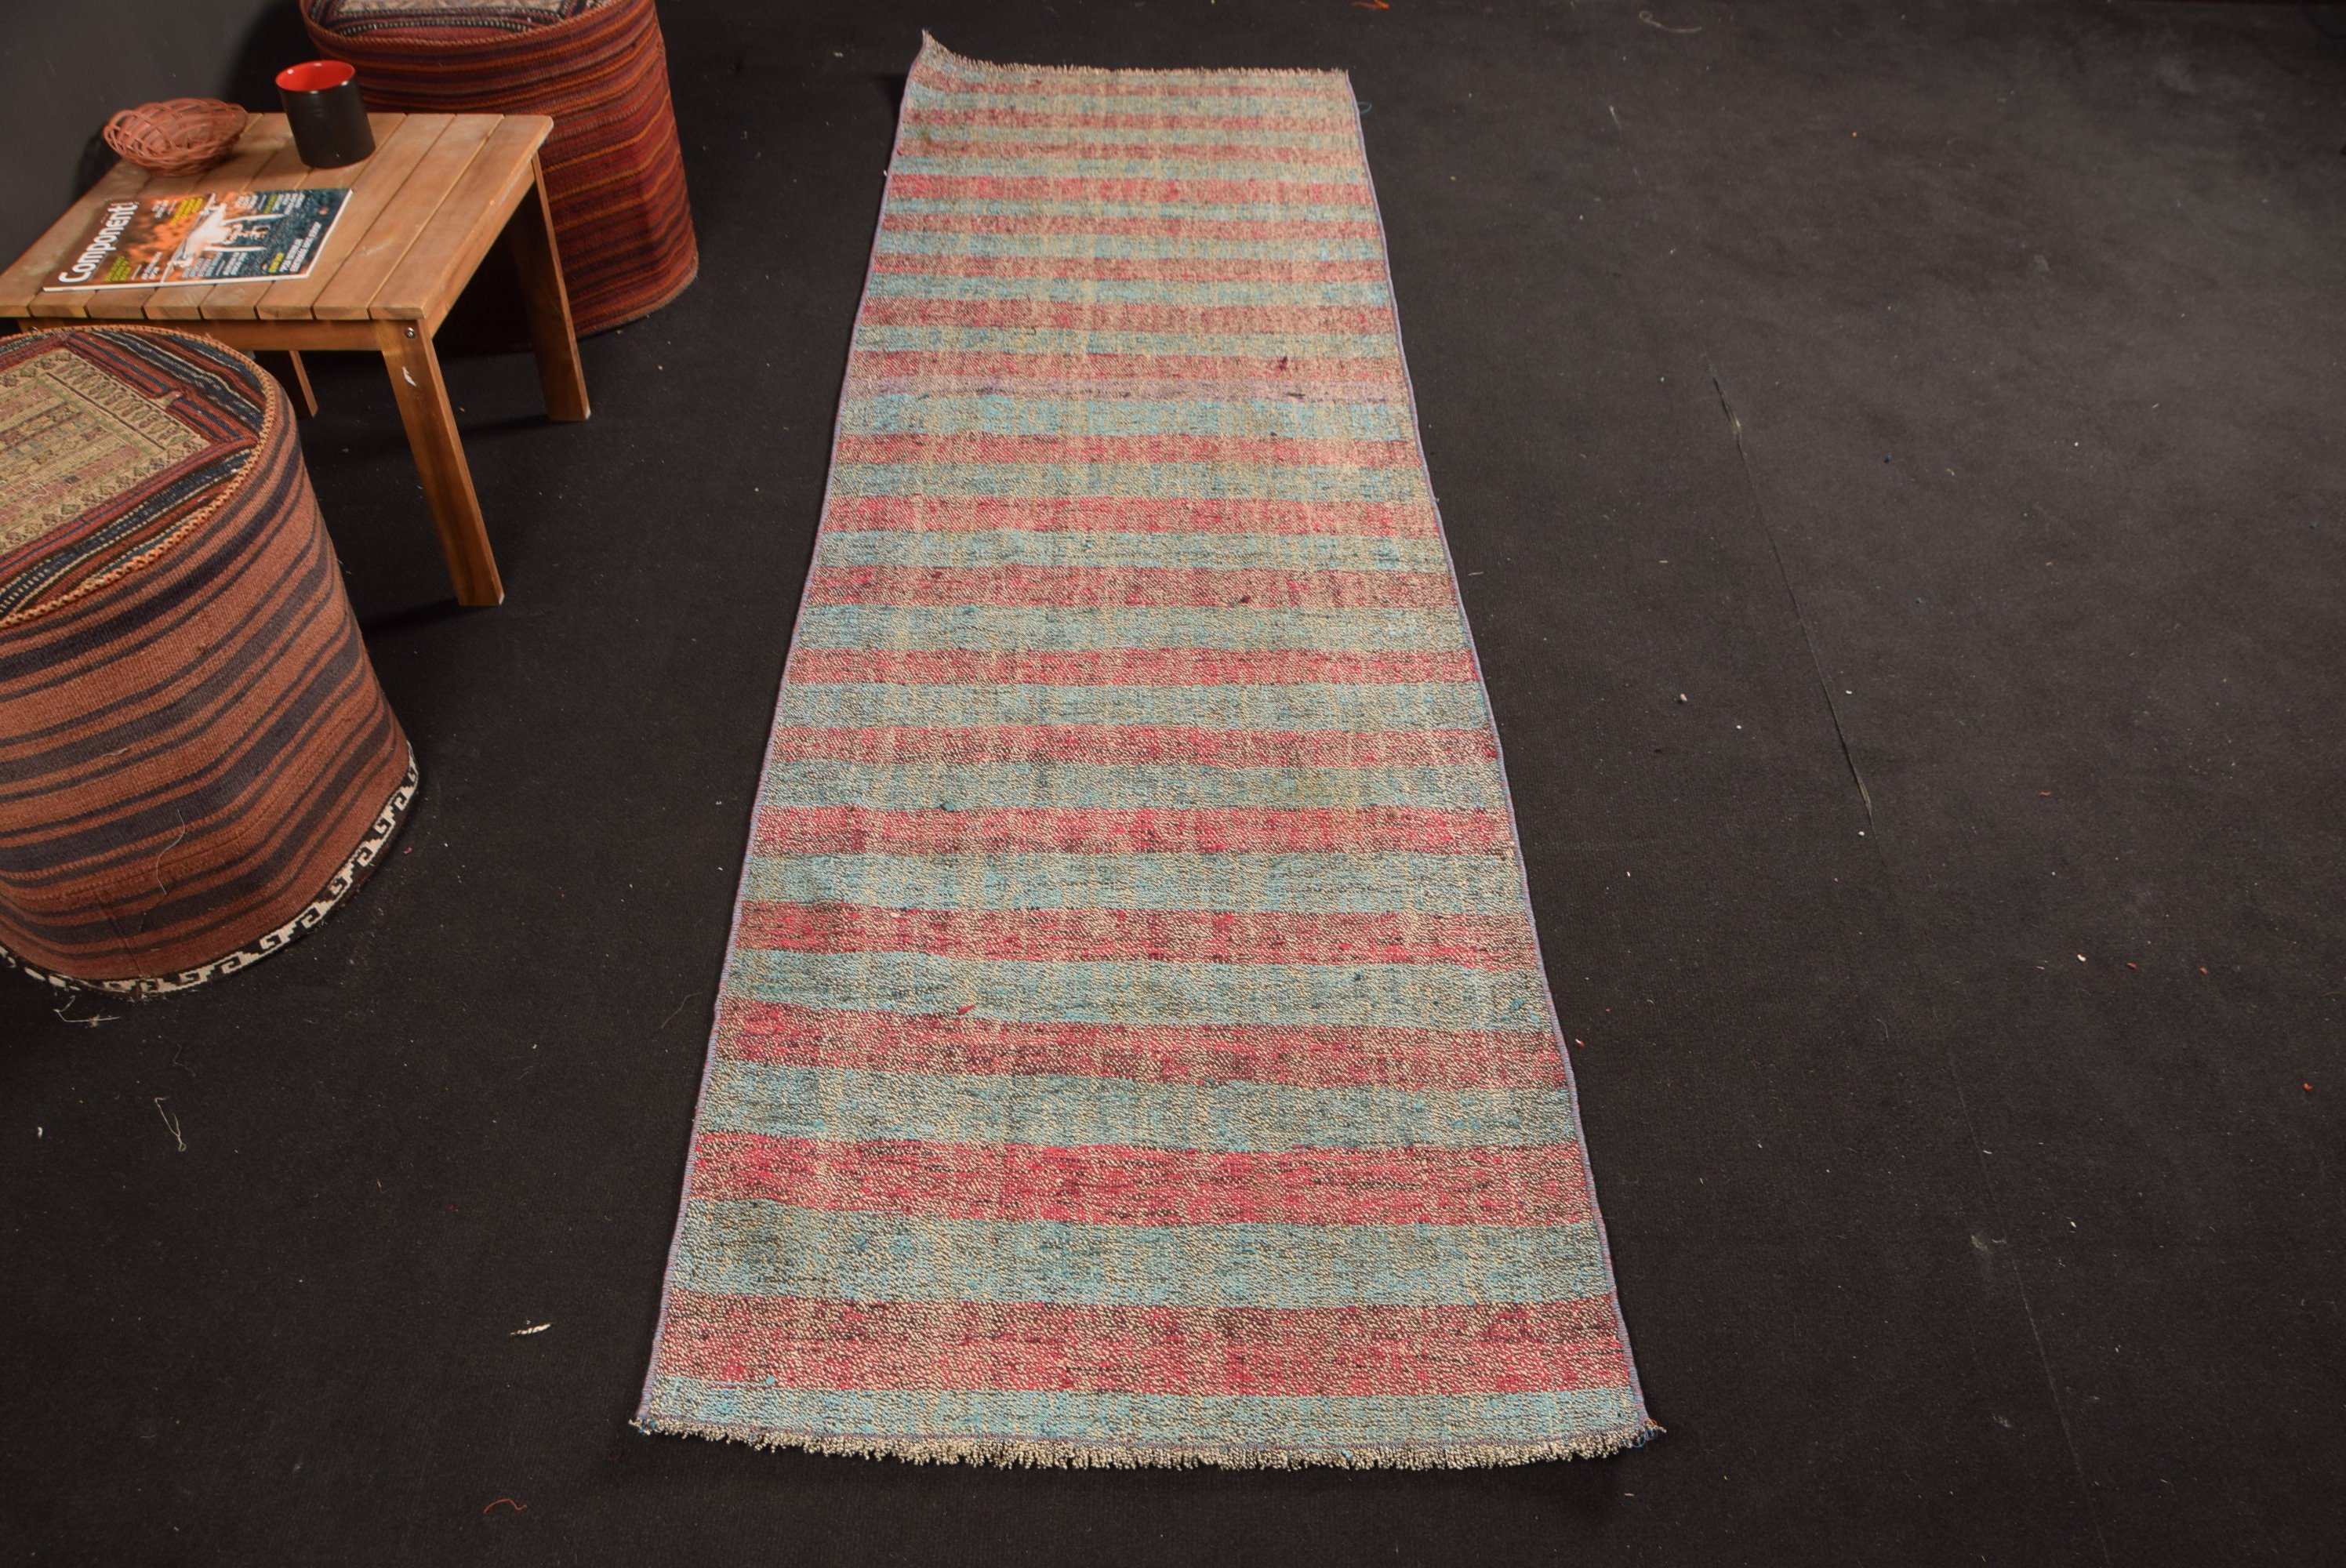 Blue Oriental Rugs, Vintage Rugs, Tribal Rug, Wool Rug, Stair Rug, Kilim, Home Decor Rug, Turkish Rug, Kitchen Rugs, 2.5x8.3 ft Runner Rugs